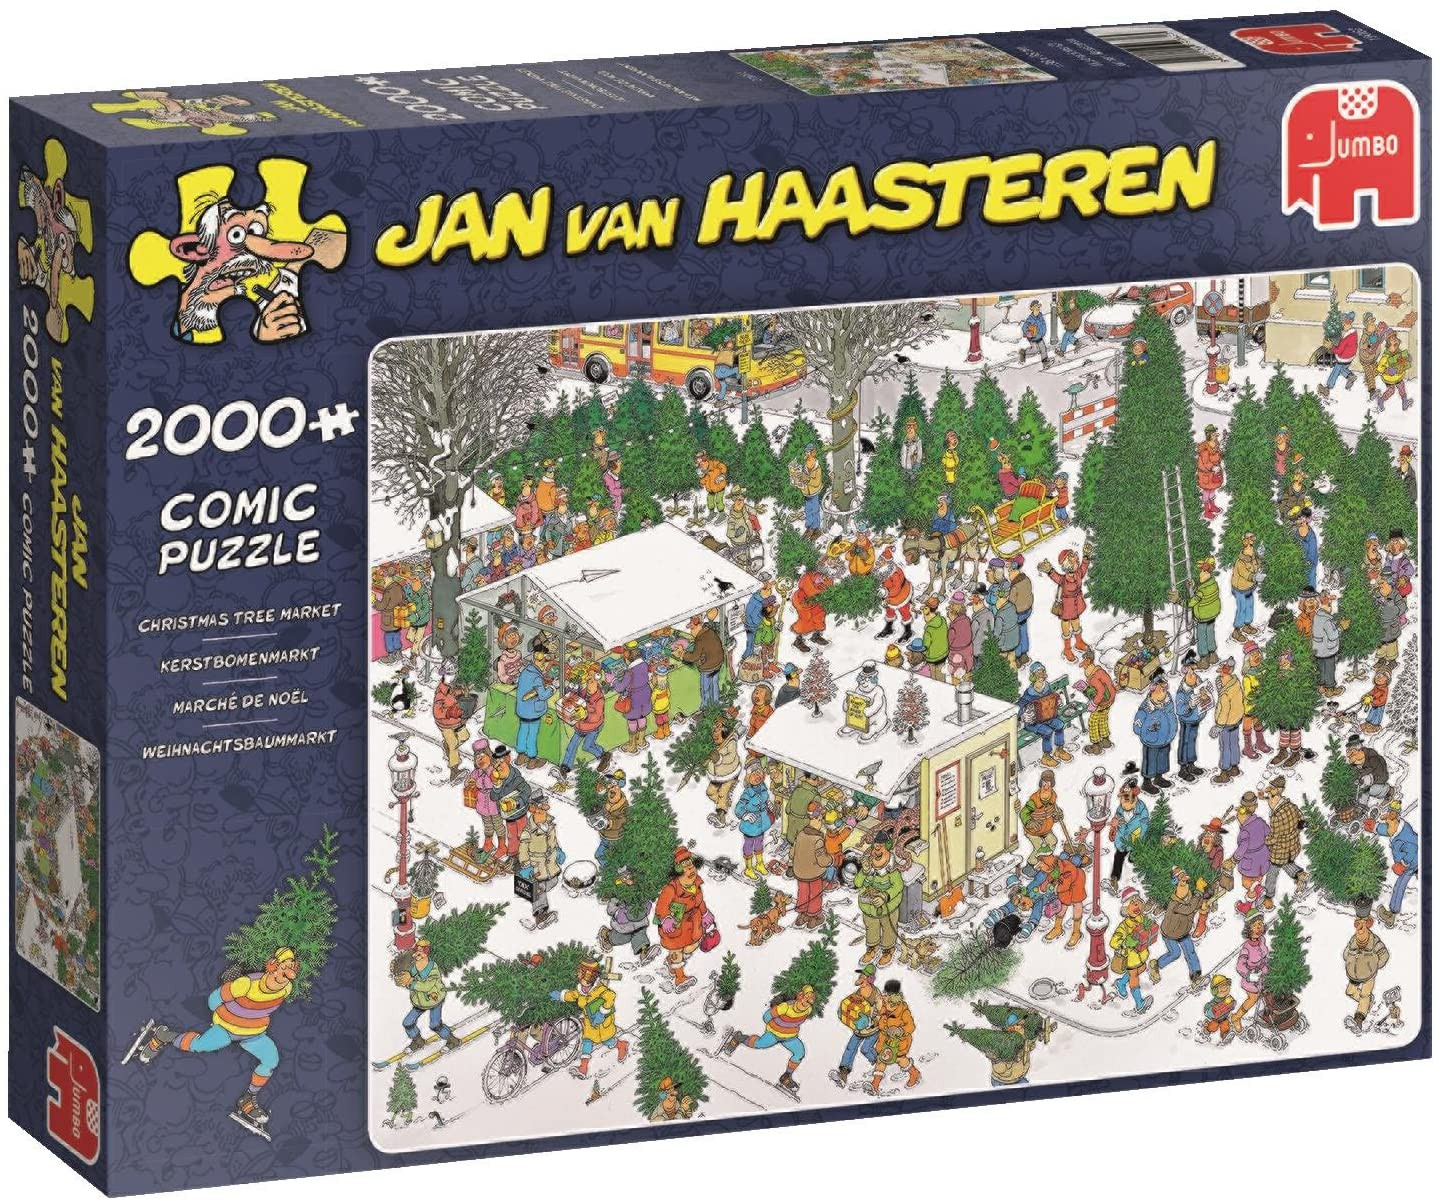 Puzzle 2000 pzs. Jan van Haasteren, The Christmas Tree Market